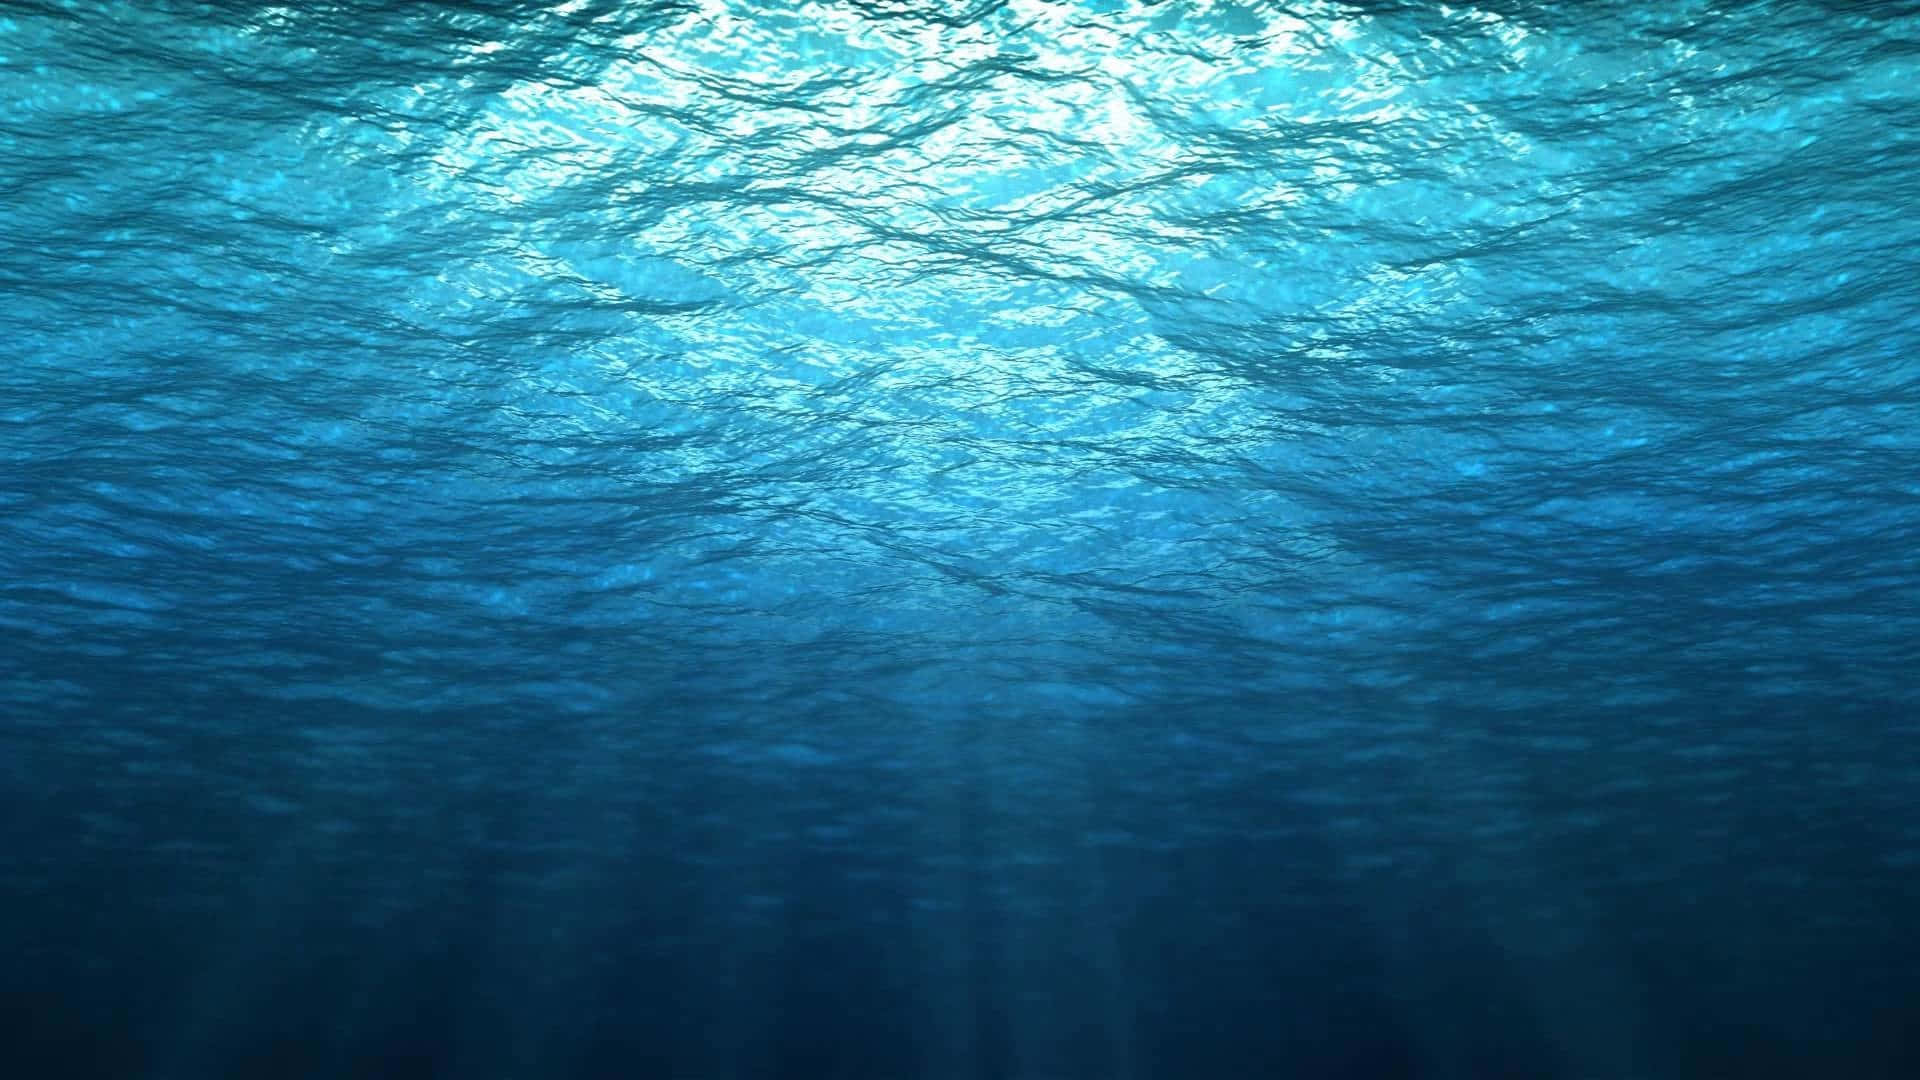 An underwater wonderland awaits